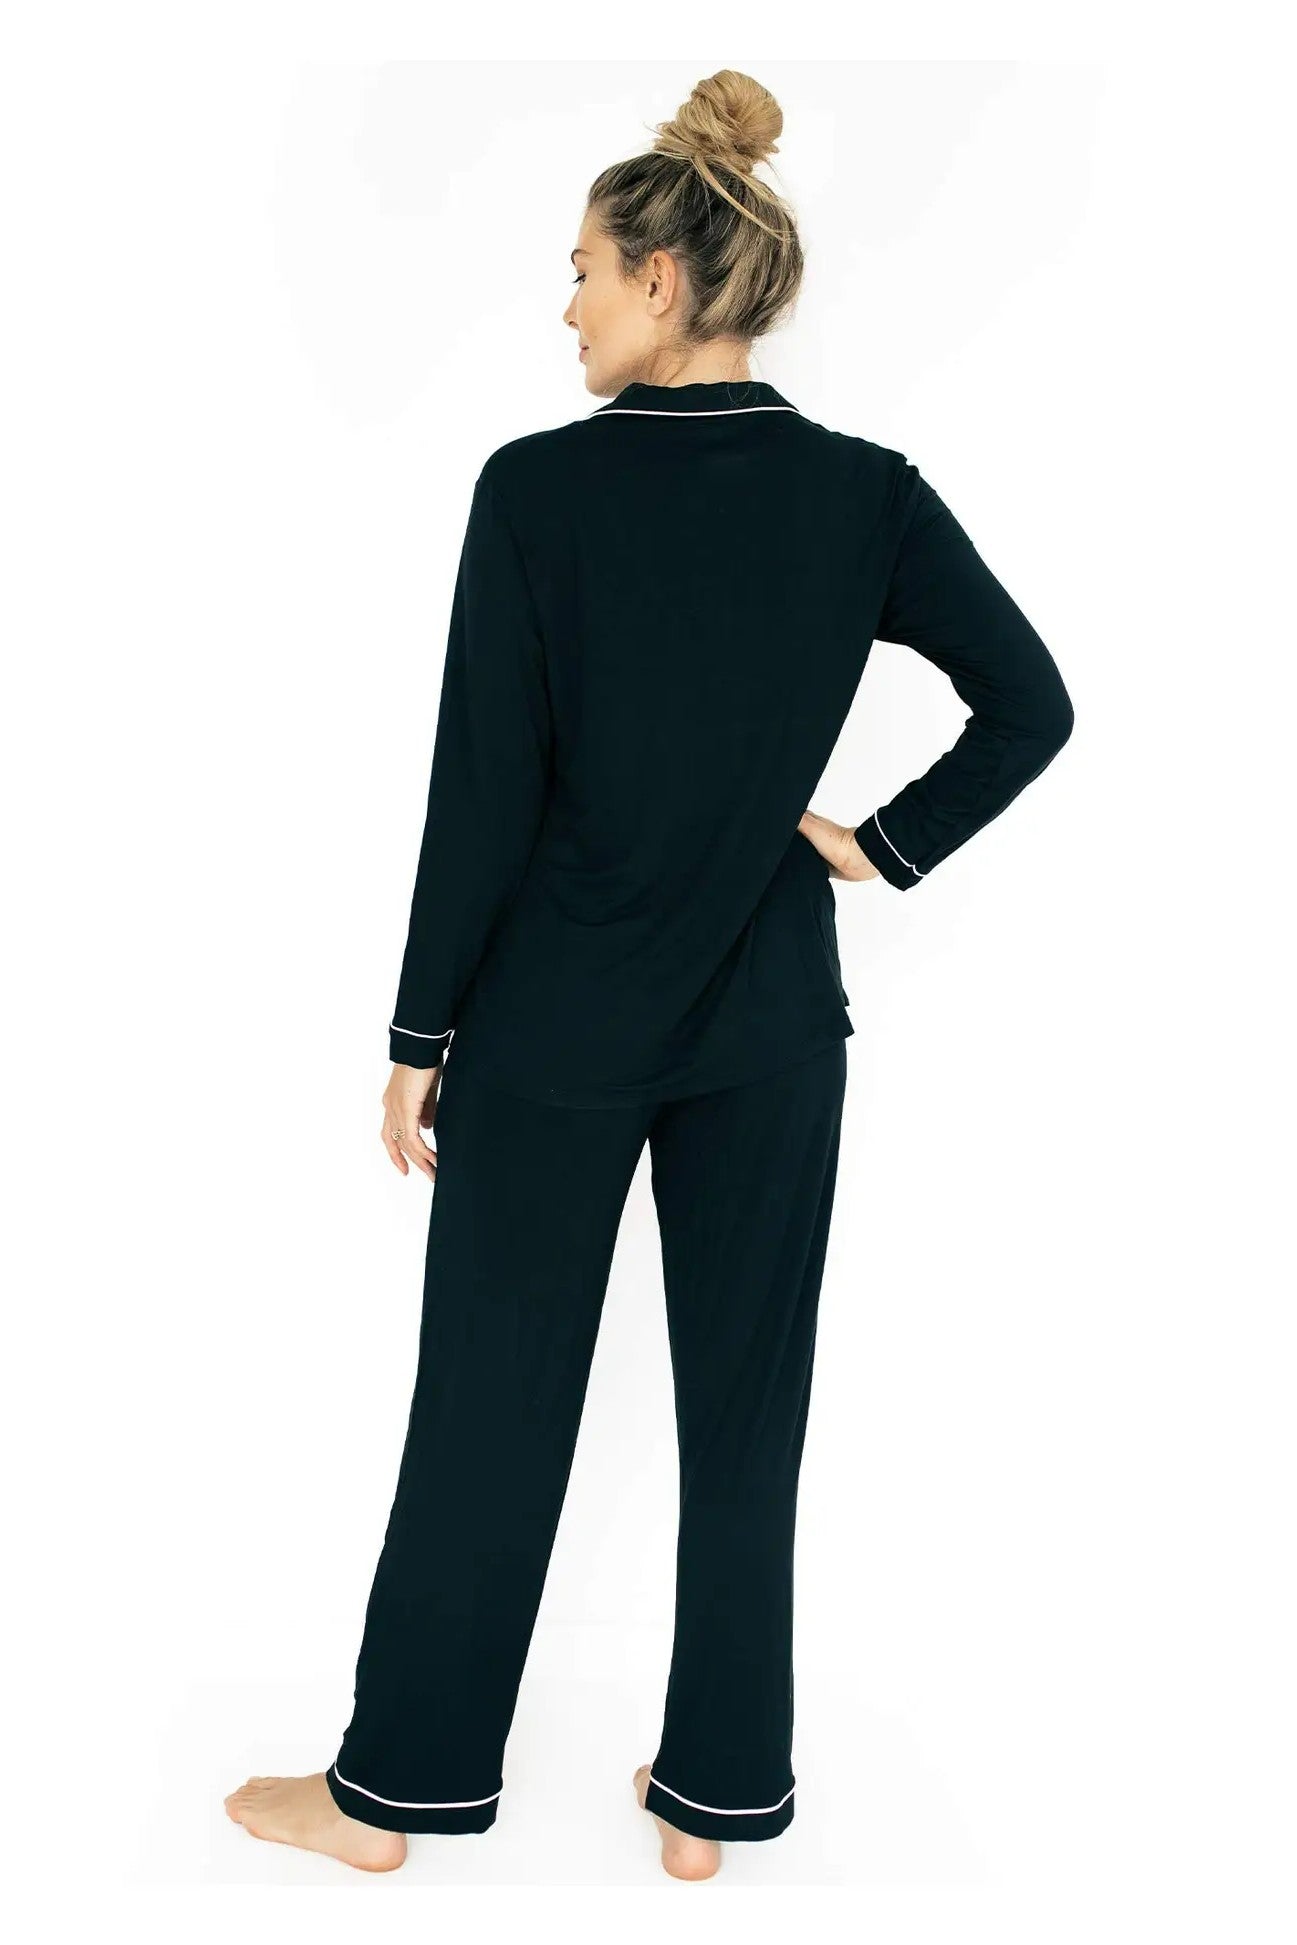 Kindred Bravely Clea Bamboo Classic Long Sleeve Maternity & Nursing Pajama  Set (Black, X-Large) - Yahoo Shopping